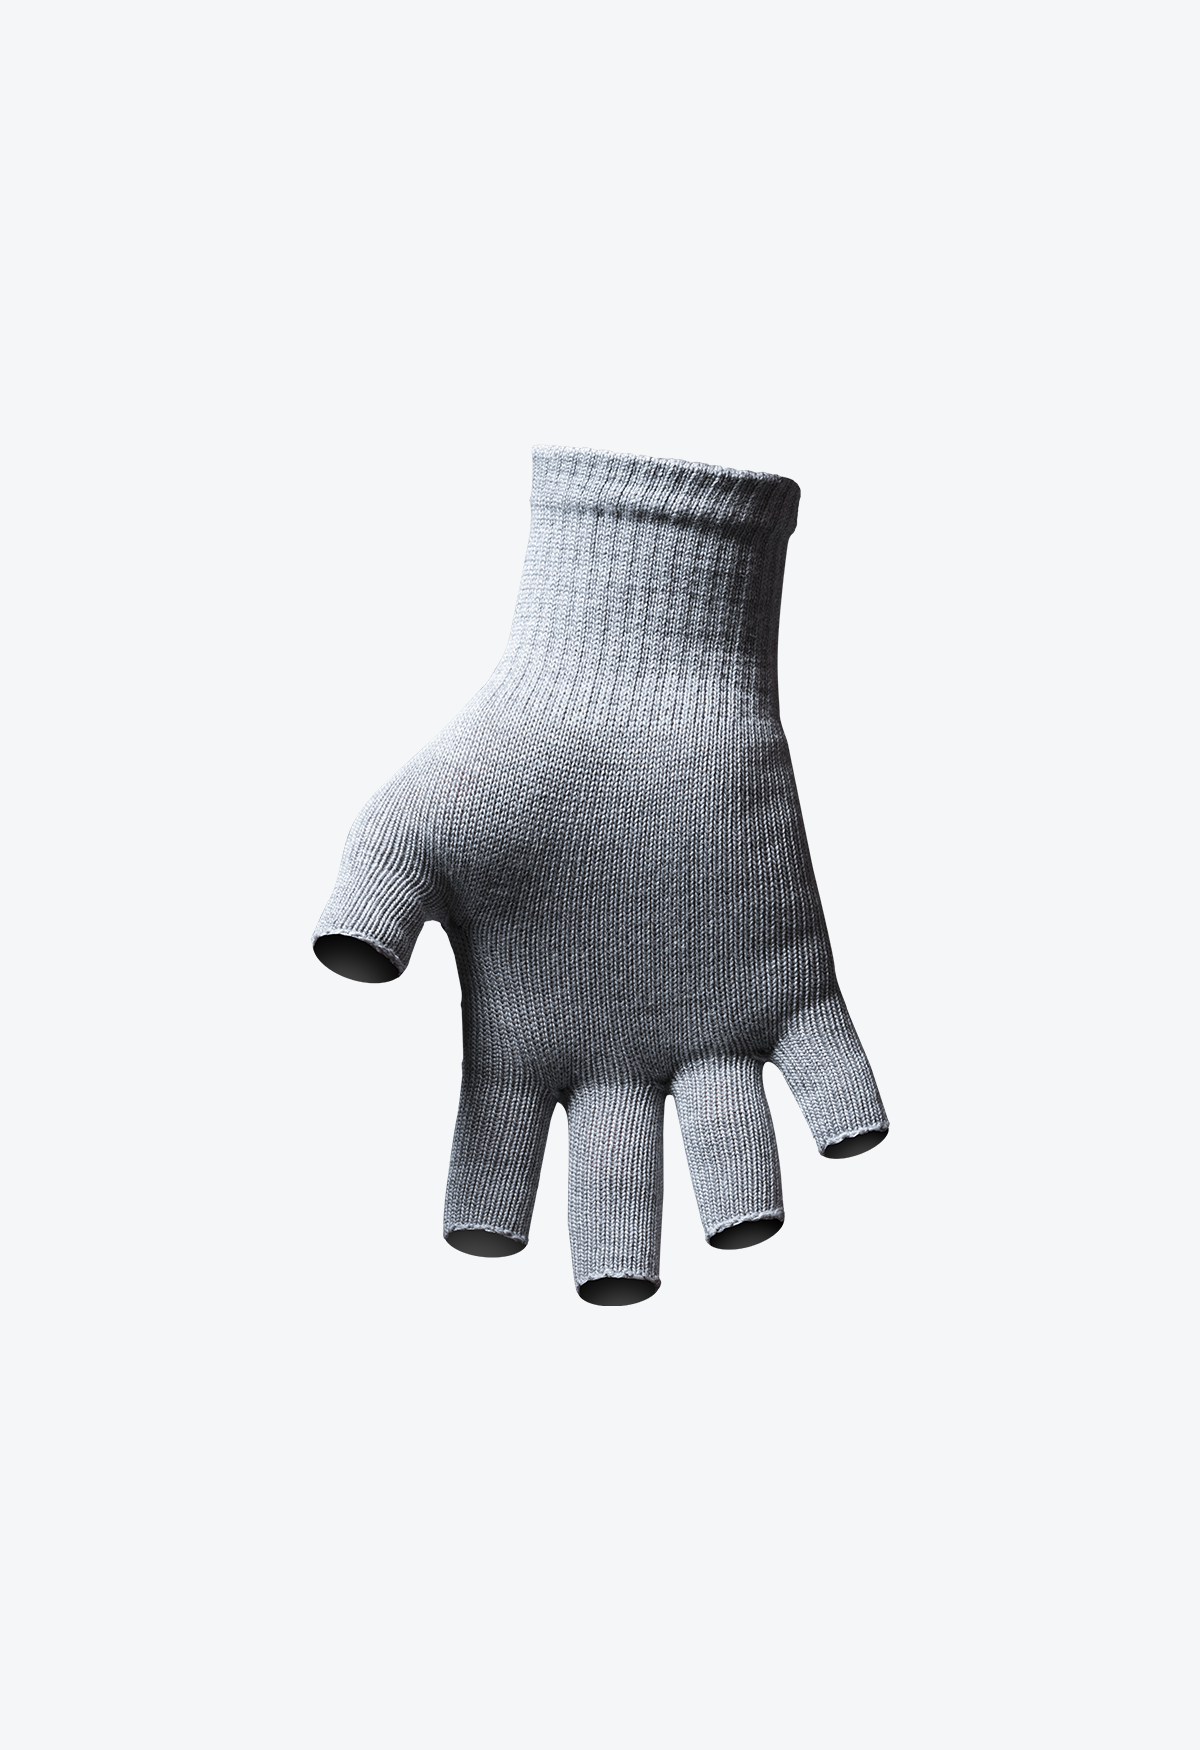 cool black fingerless gloves